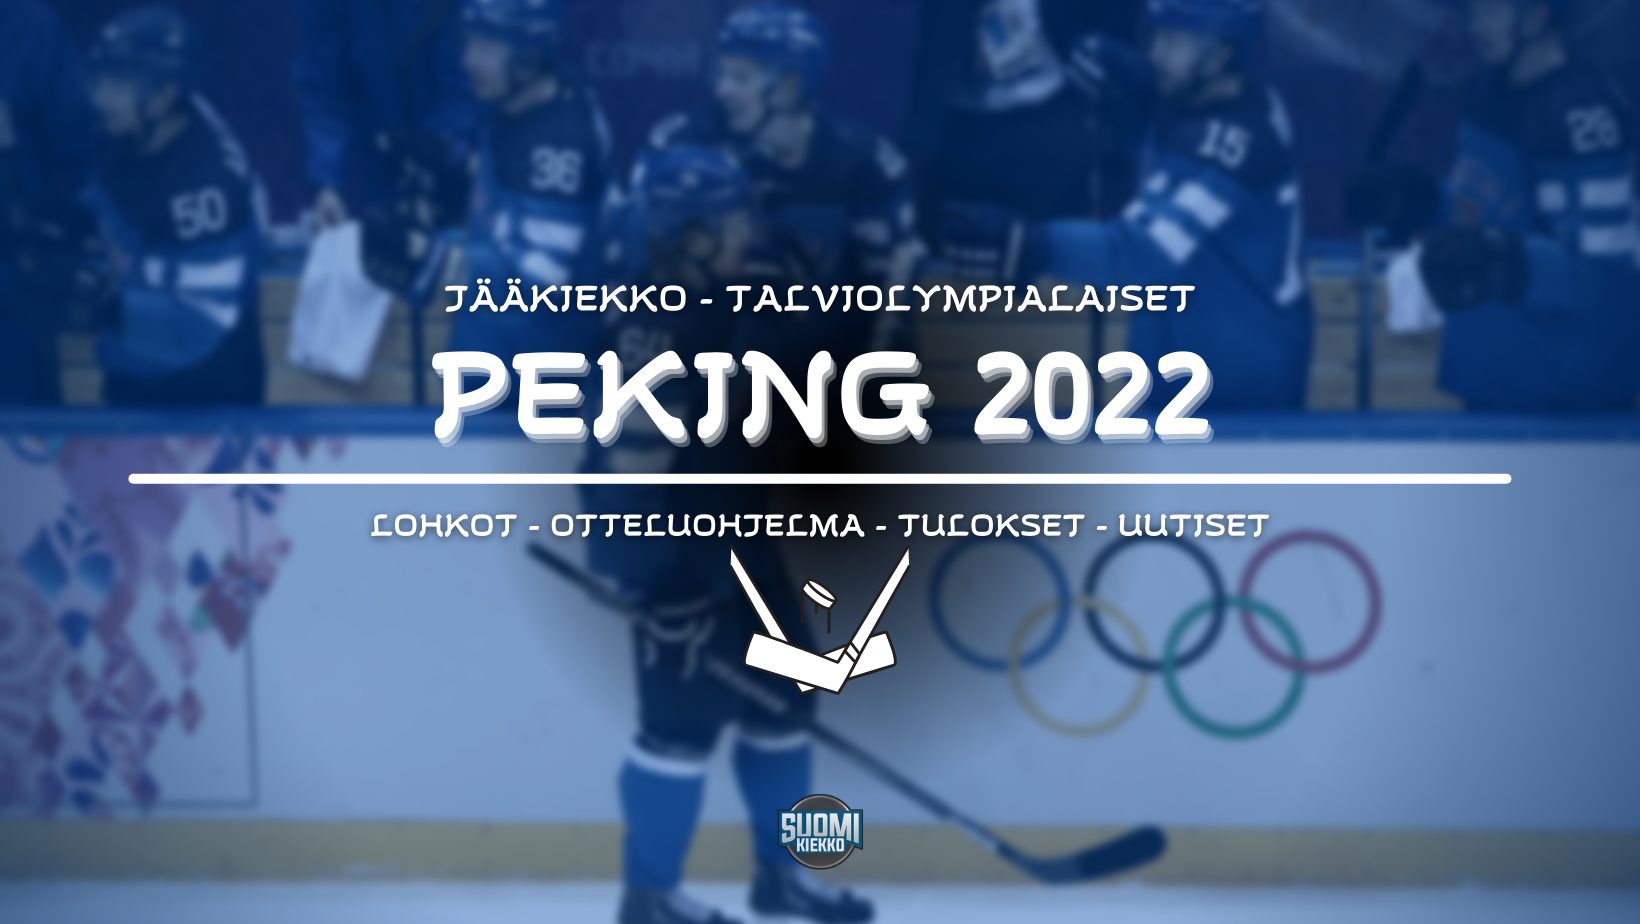 Jääkiekko Pekingin talviolympialaisissa 2022 | SUOMELLE KULTAA!